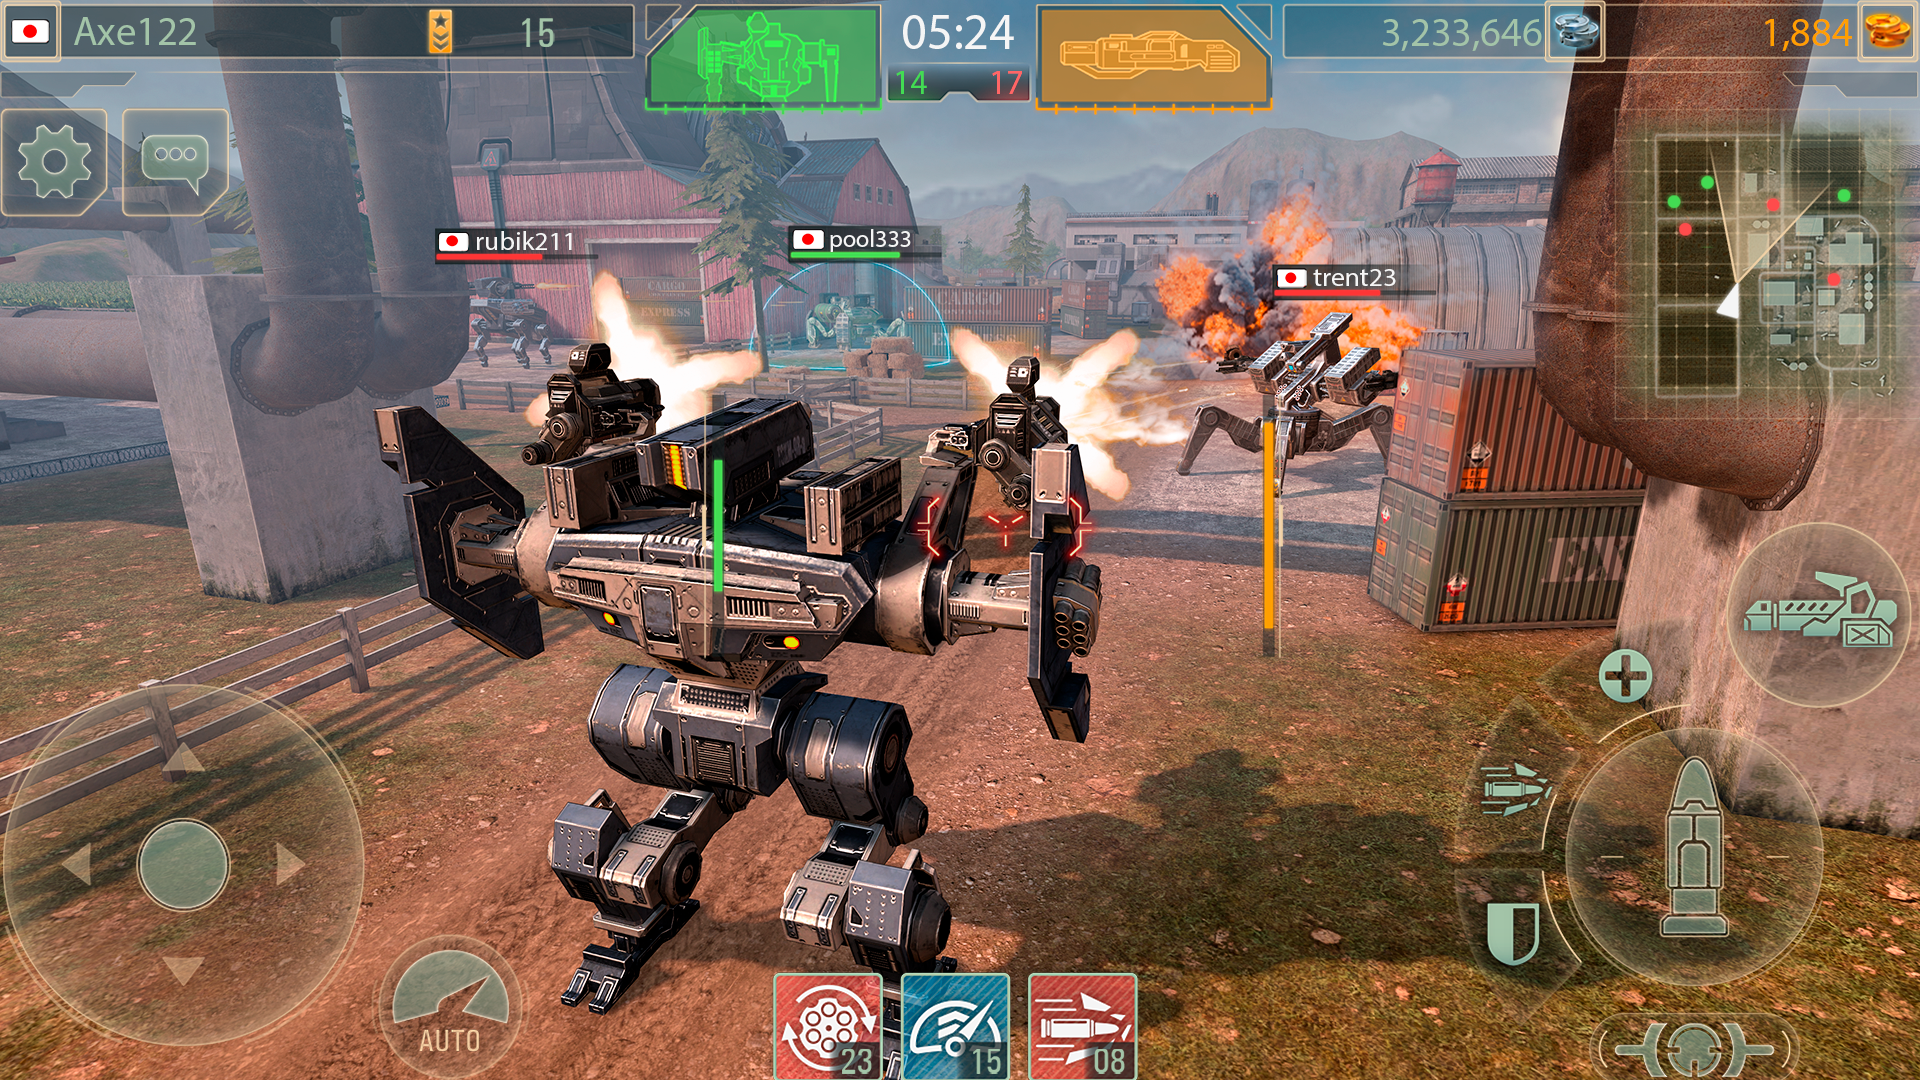 Screenshot 1 of WWR: 로봇 전투 게임 3.25.11